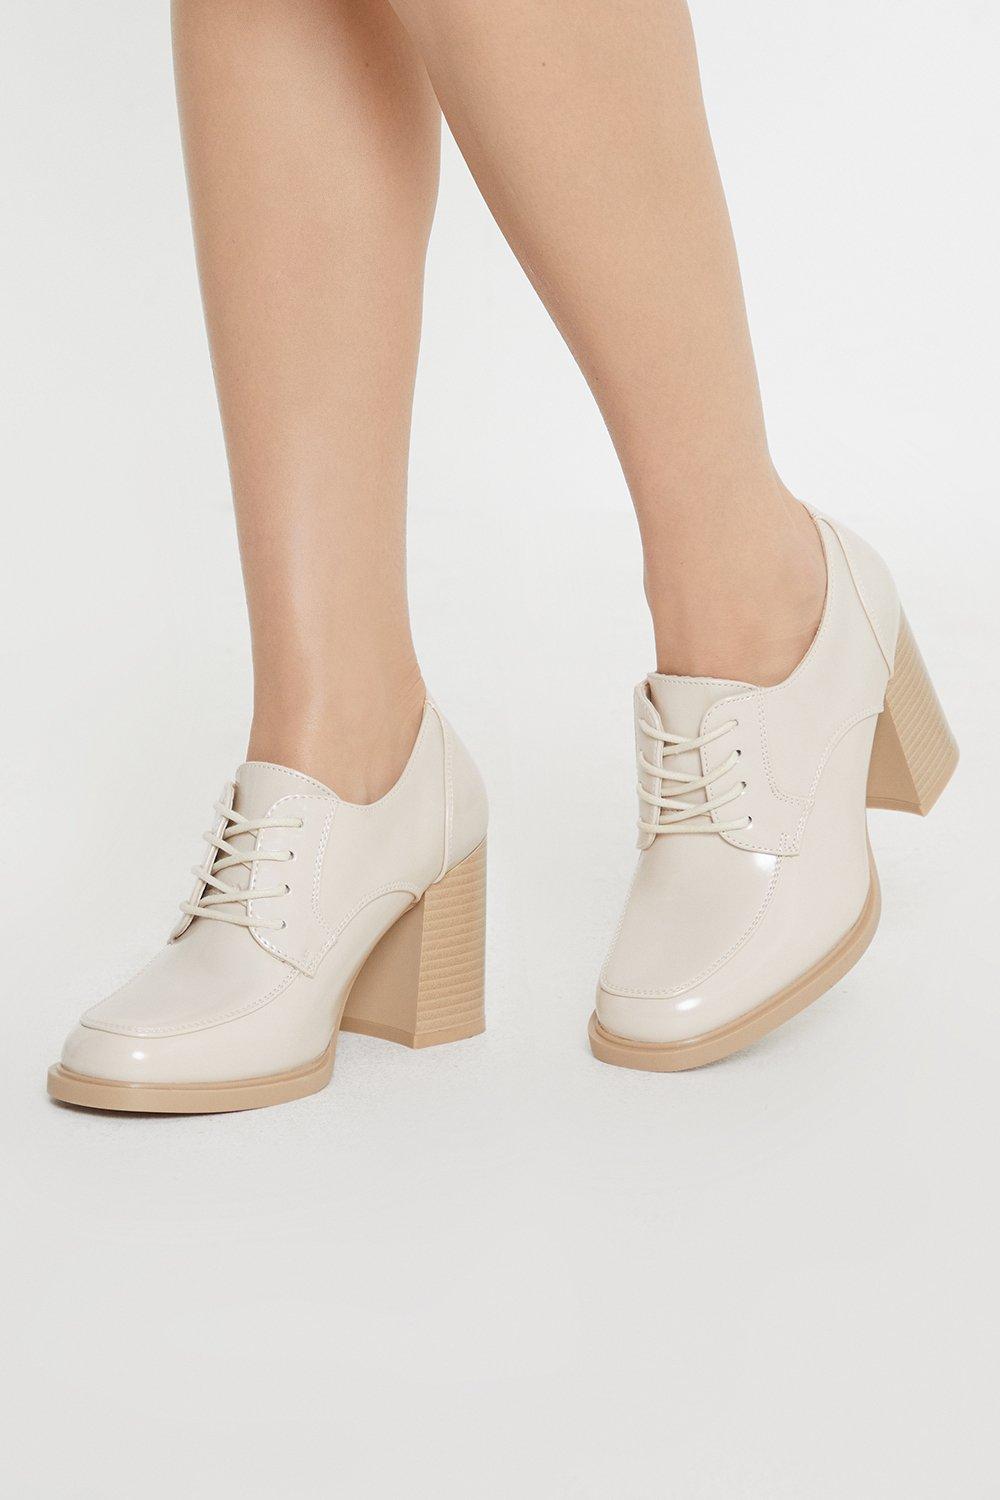 Women’s Principles: Lara Front Lace Up High Block Heel Shoe - beige - 7